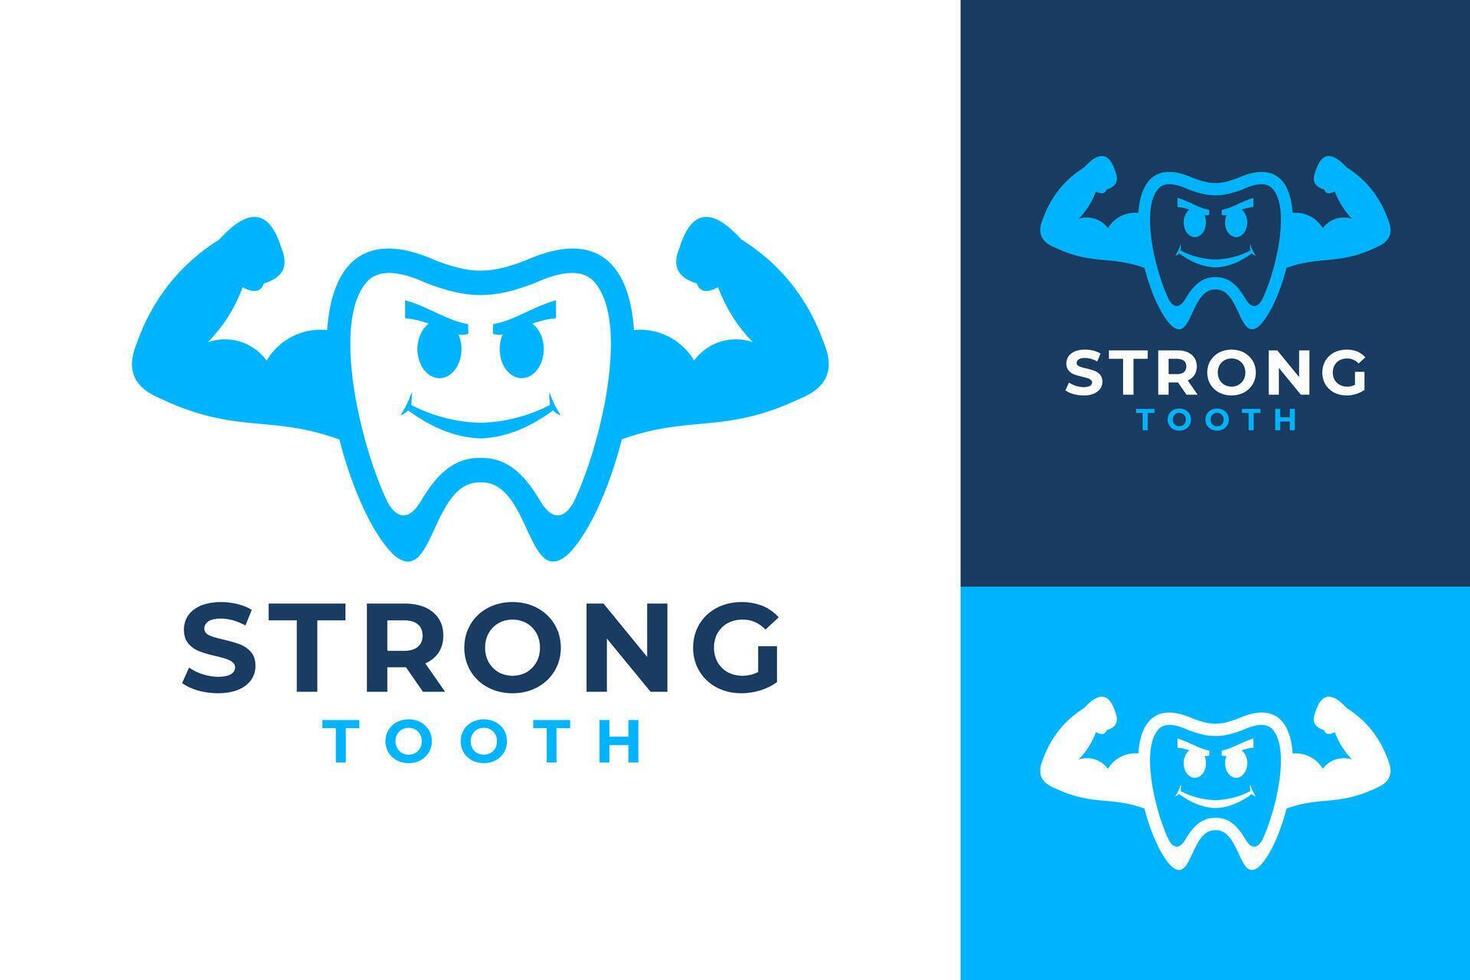 forte salutare denti dentista logo design vettore